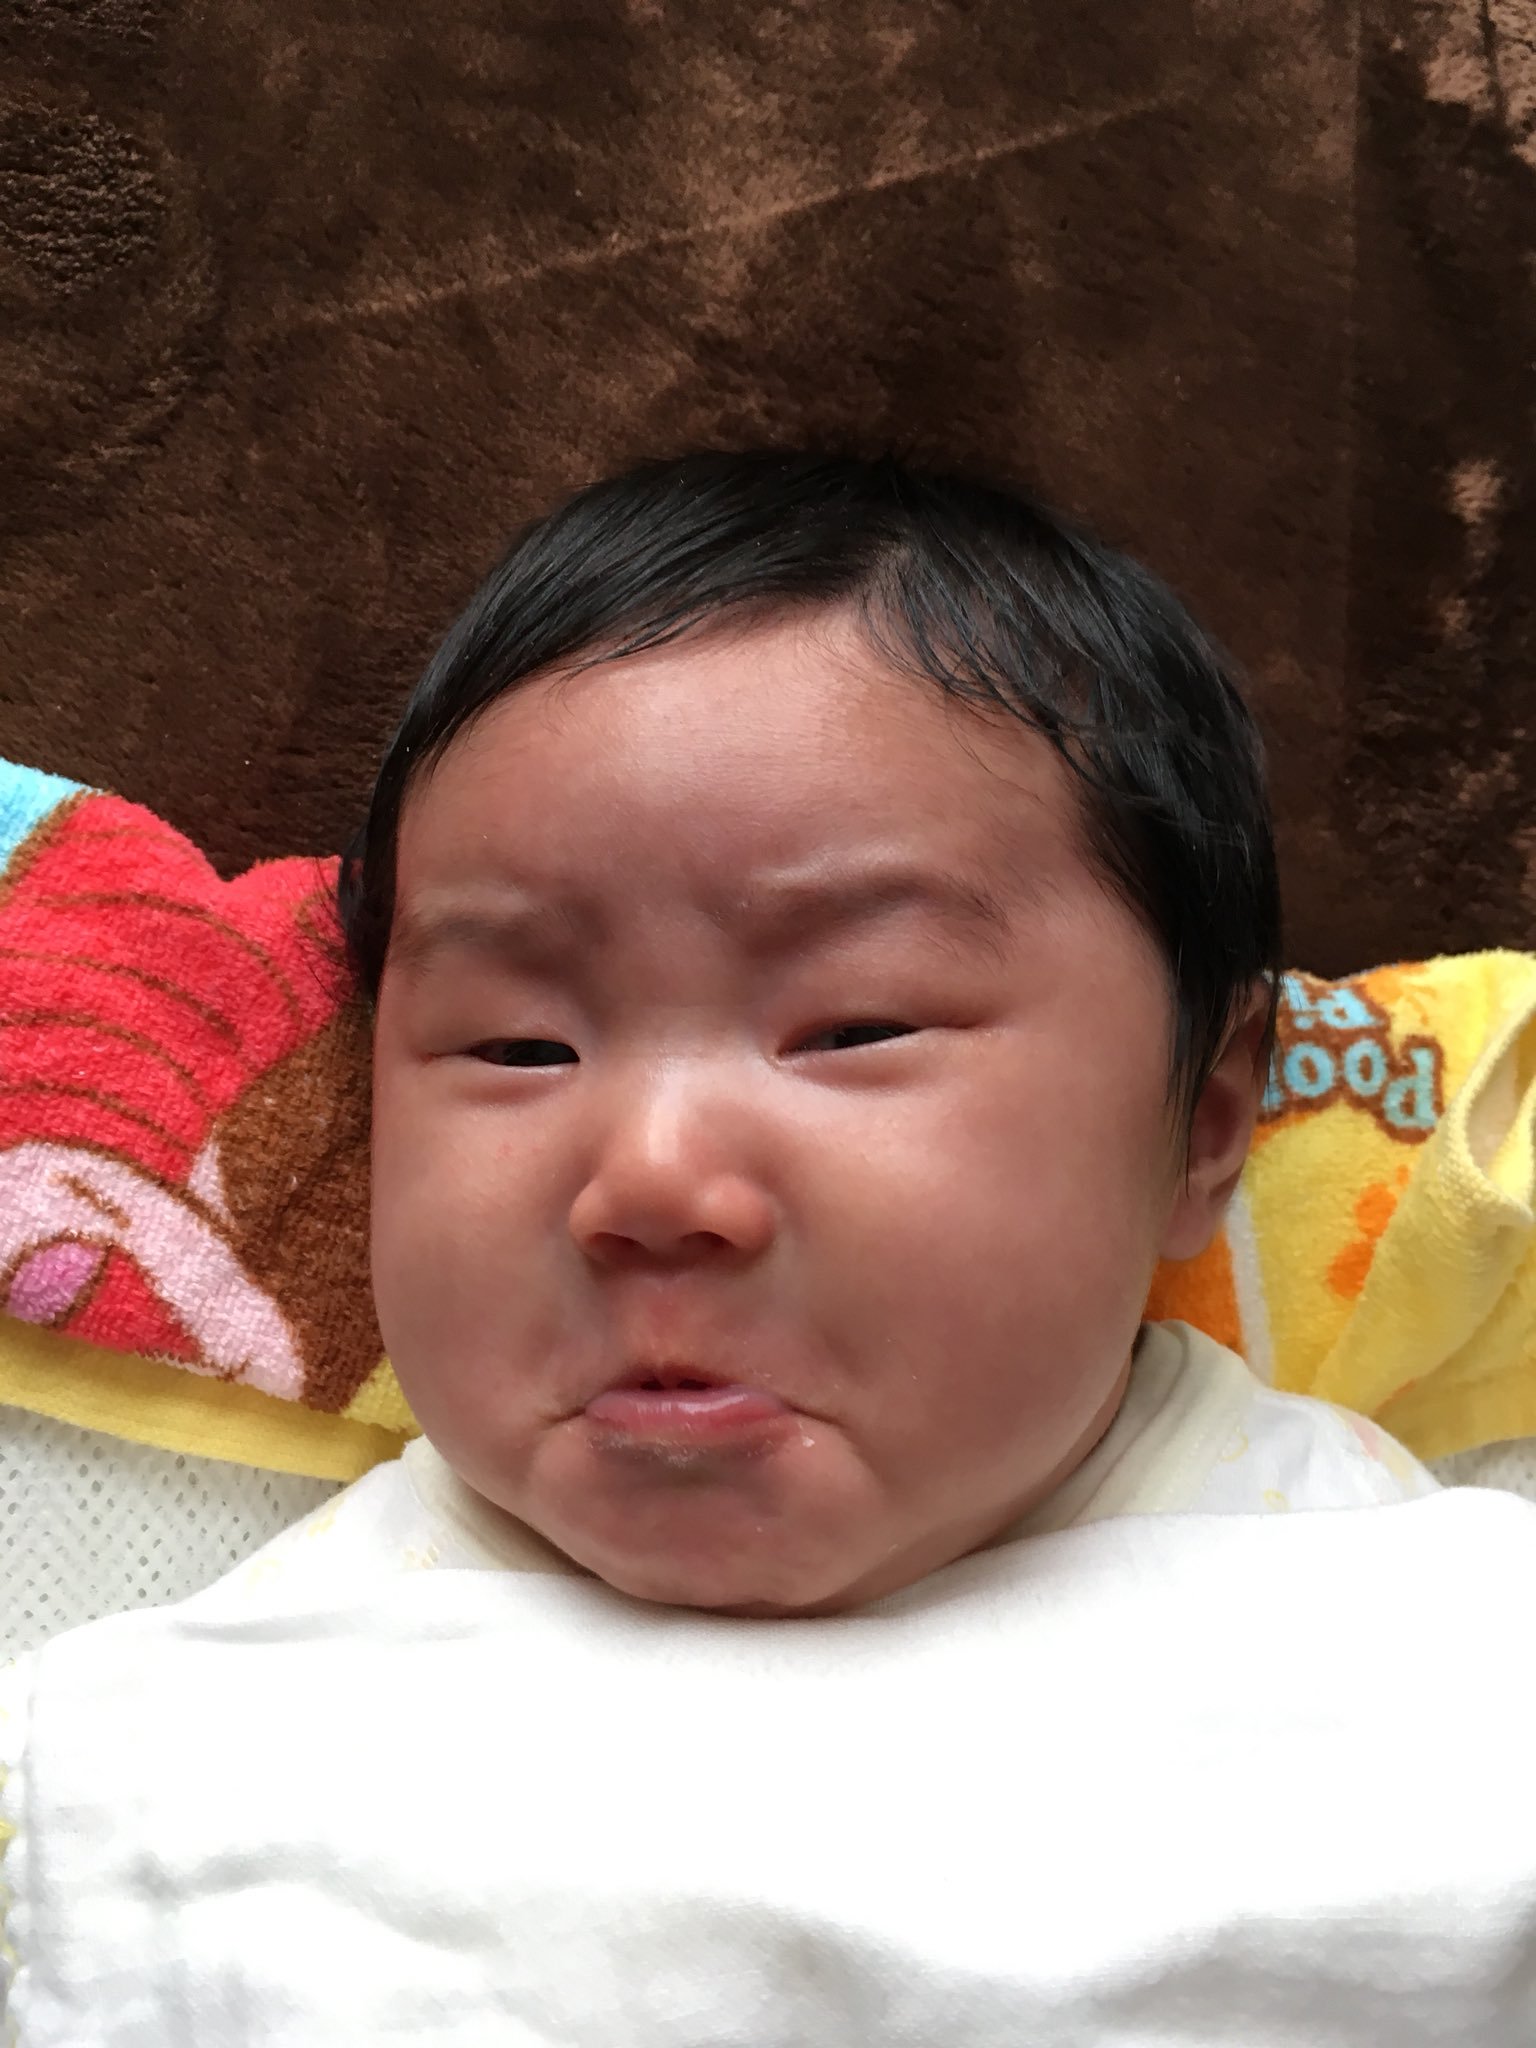 越丑越好!日本举办失败婴儿摄影大赛笑翻网友